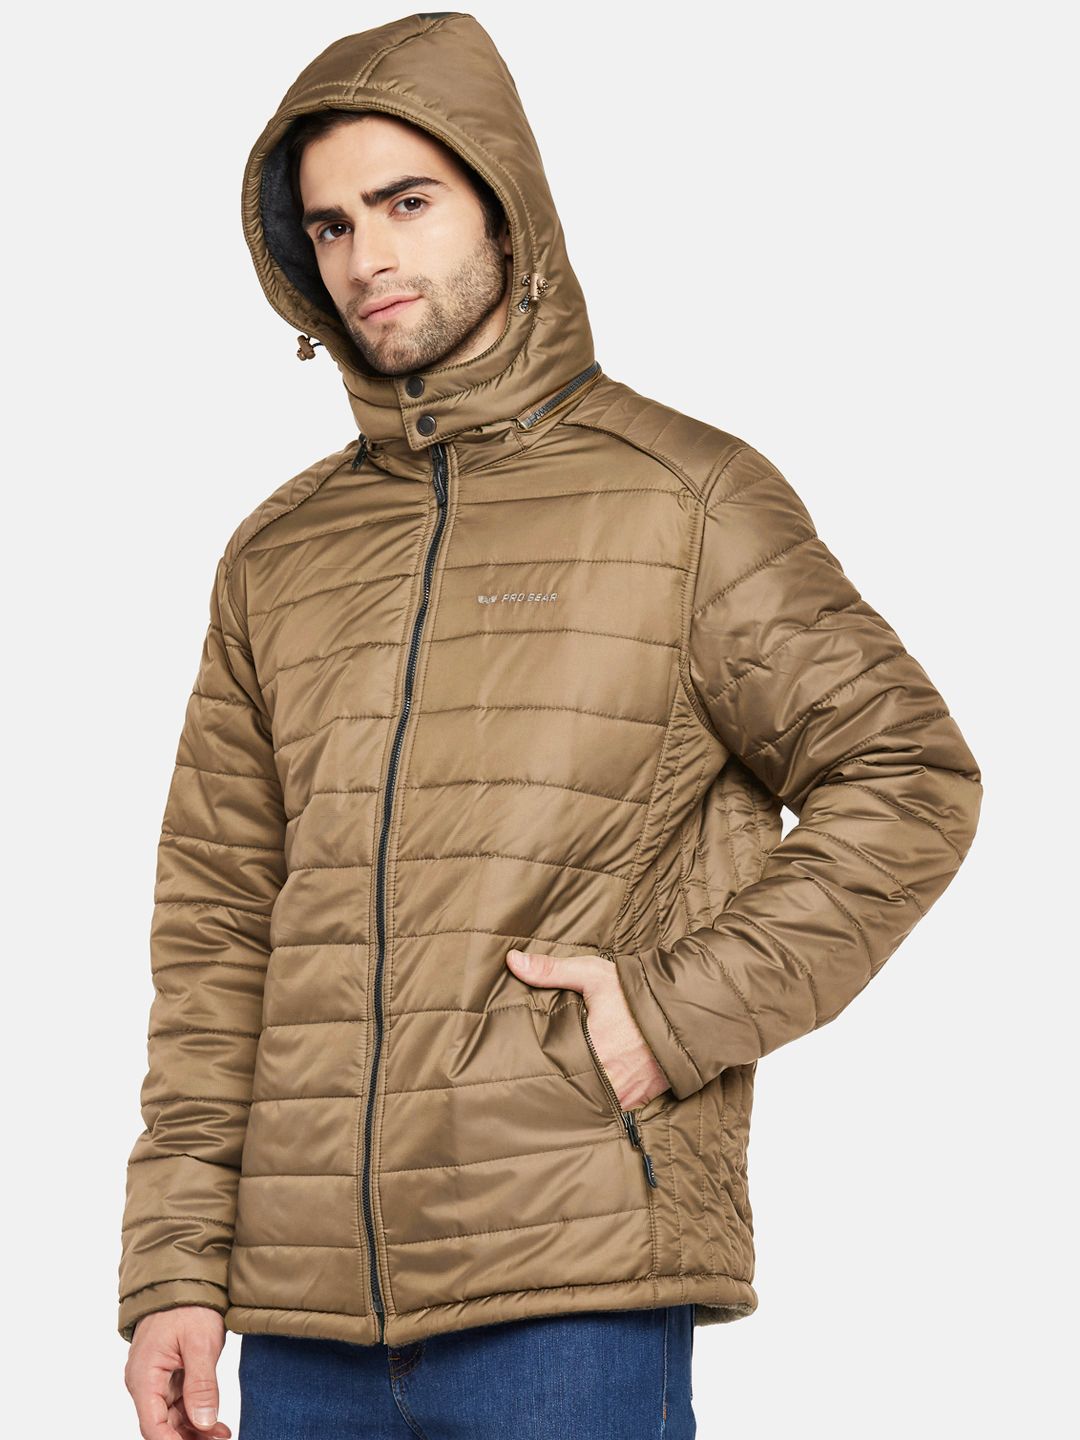 Tan Fleece Lined Puffer Jacket | Men